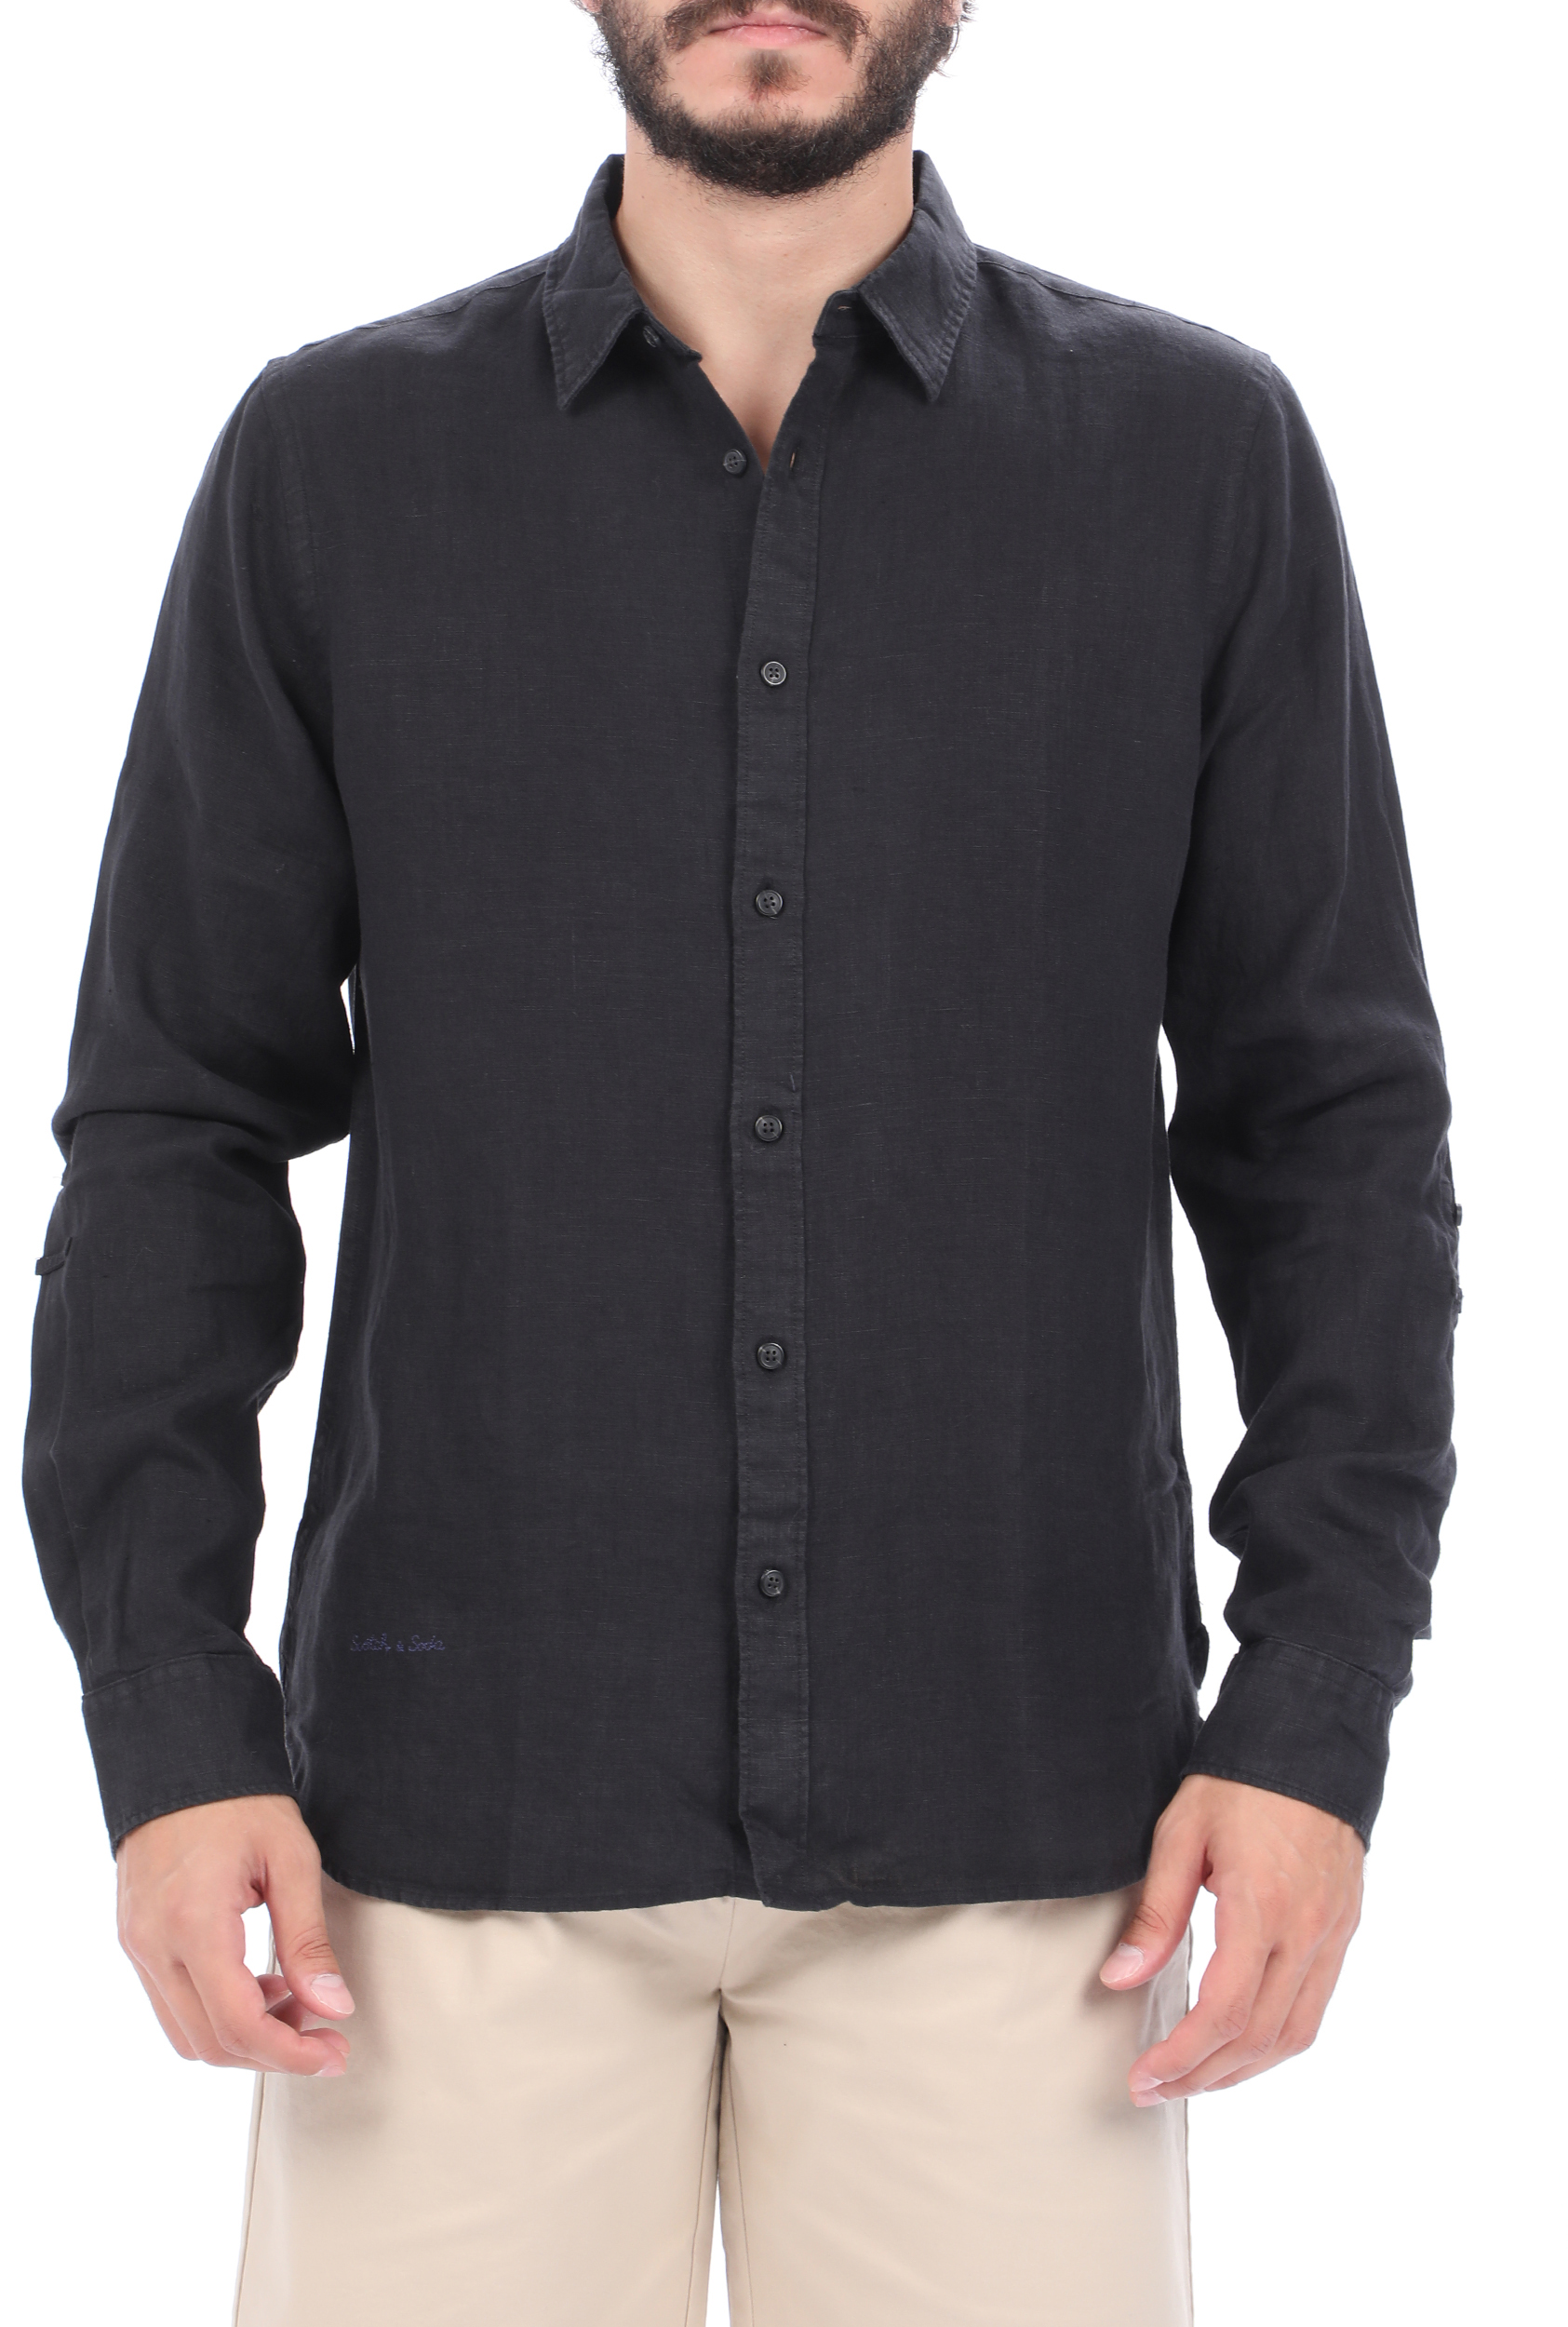 Ανδρικά/Ρούχα/Πουκάμισα/Μακρυμάνικα SCOTCH & SODA - Ανδρικό πουκάμισο SCOTCH & SODA REGULAR FIT- Garment-dyed line μαύρο